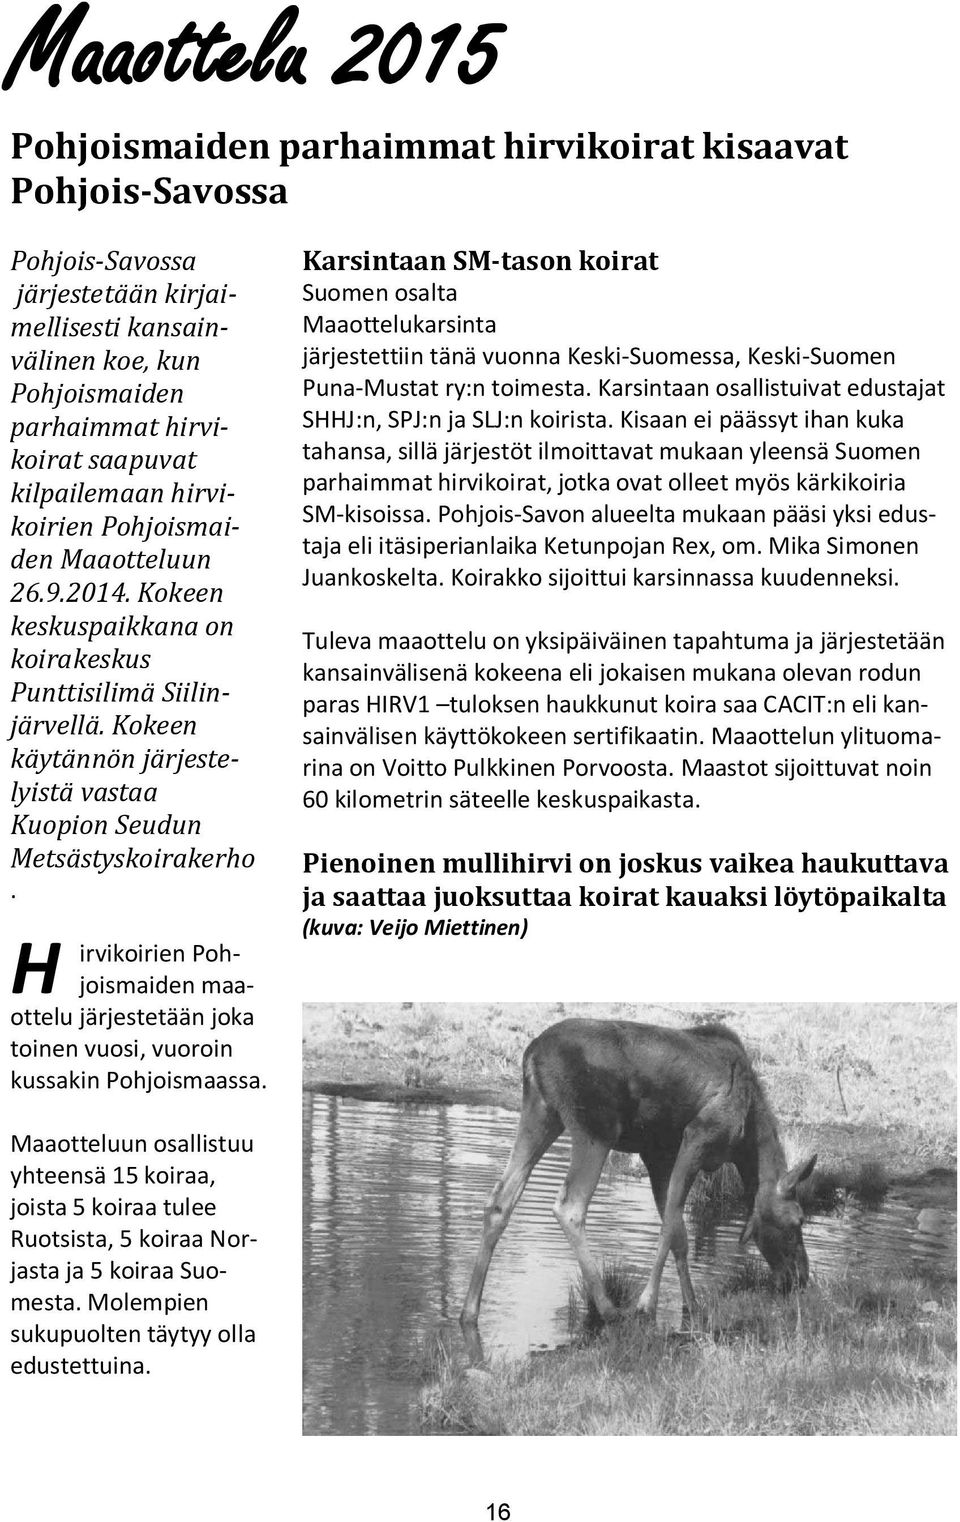 Kokeen käytännön järjestelyistä vastaa Kuopion Seudun Metsästyskoirakerho. H irvikoirien Pohjoismaiden maaottelu järjestetään joka toinen vuosi, vuoroin kussakin Pohjoismaassa.